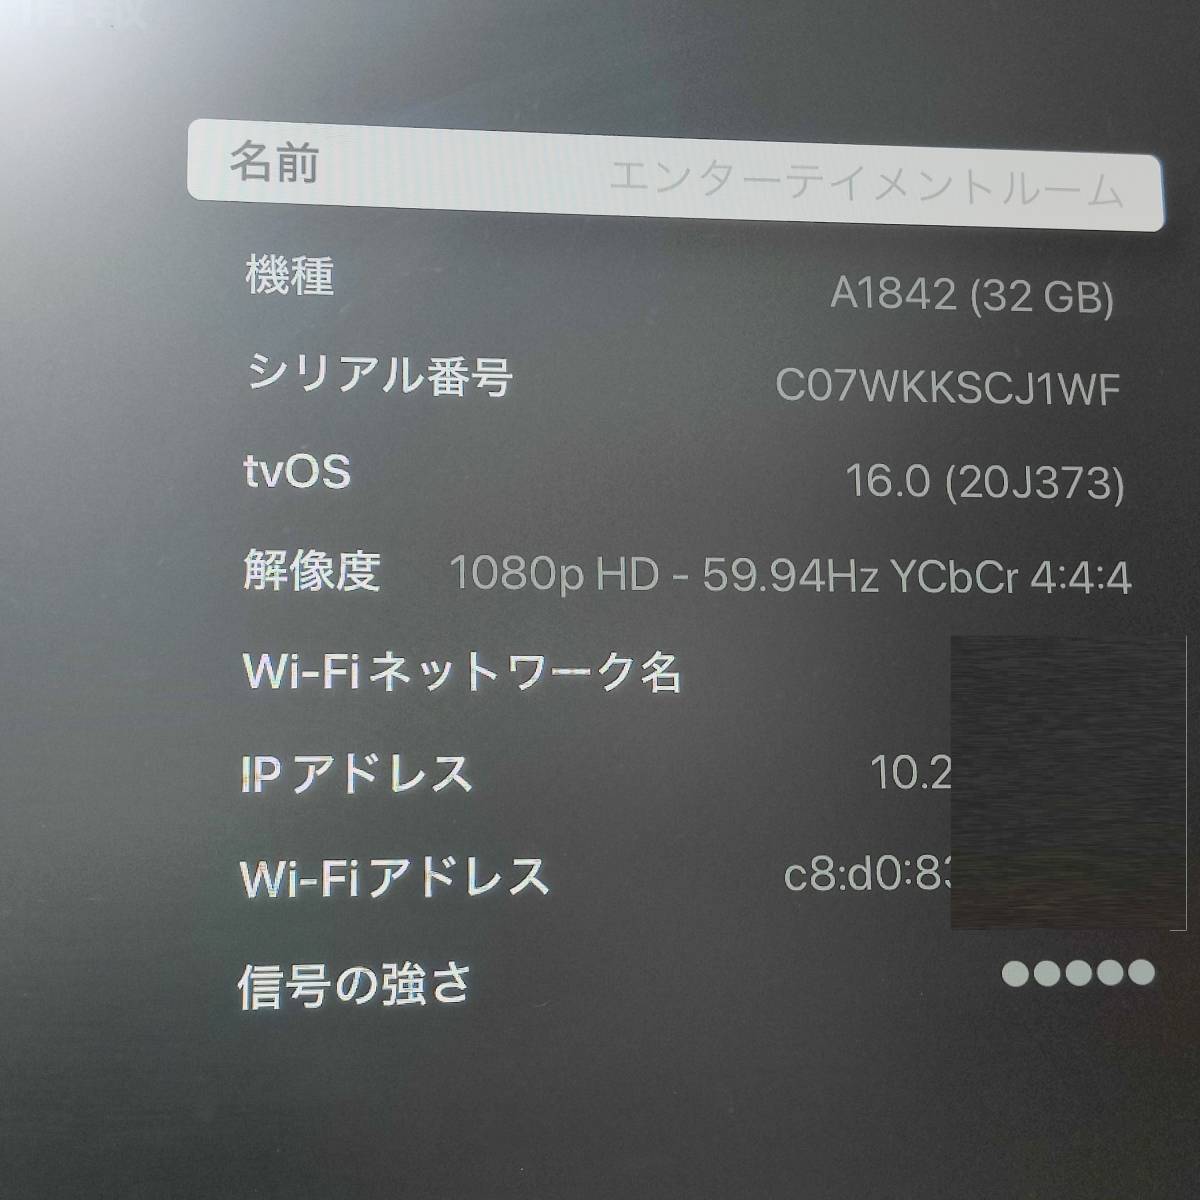 【SCJ1WF】Apple TV 4K 32GB A1842 本体 リモコン 電源ケーブル HDMIケーブル _画像5